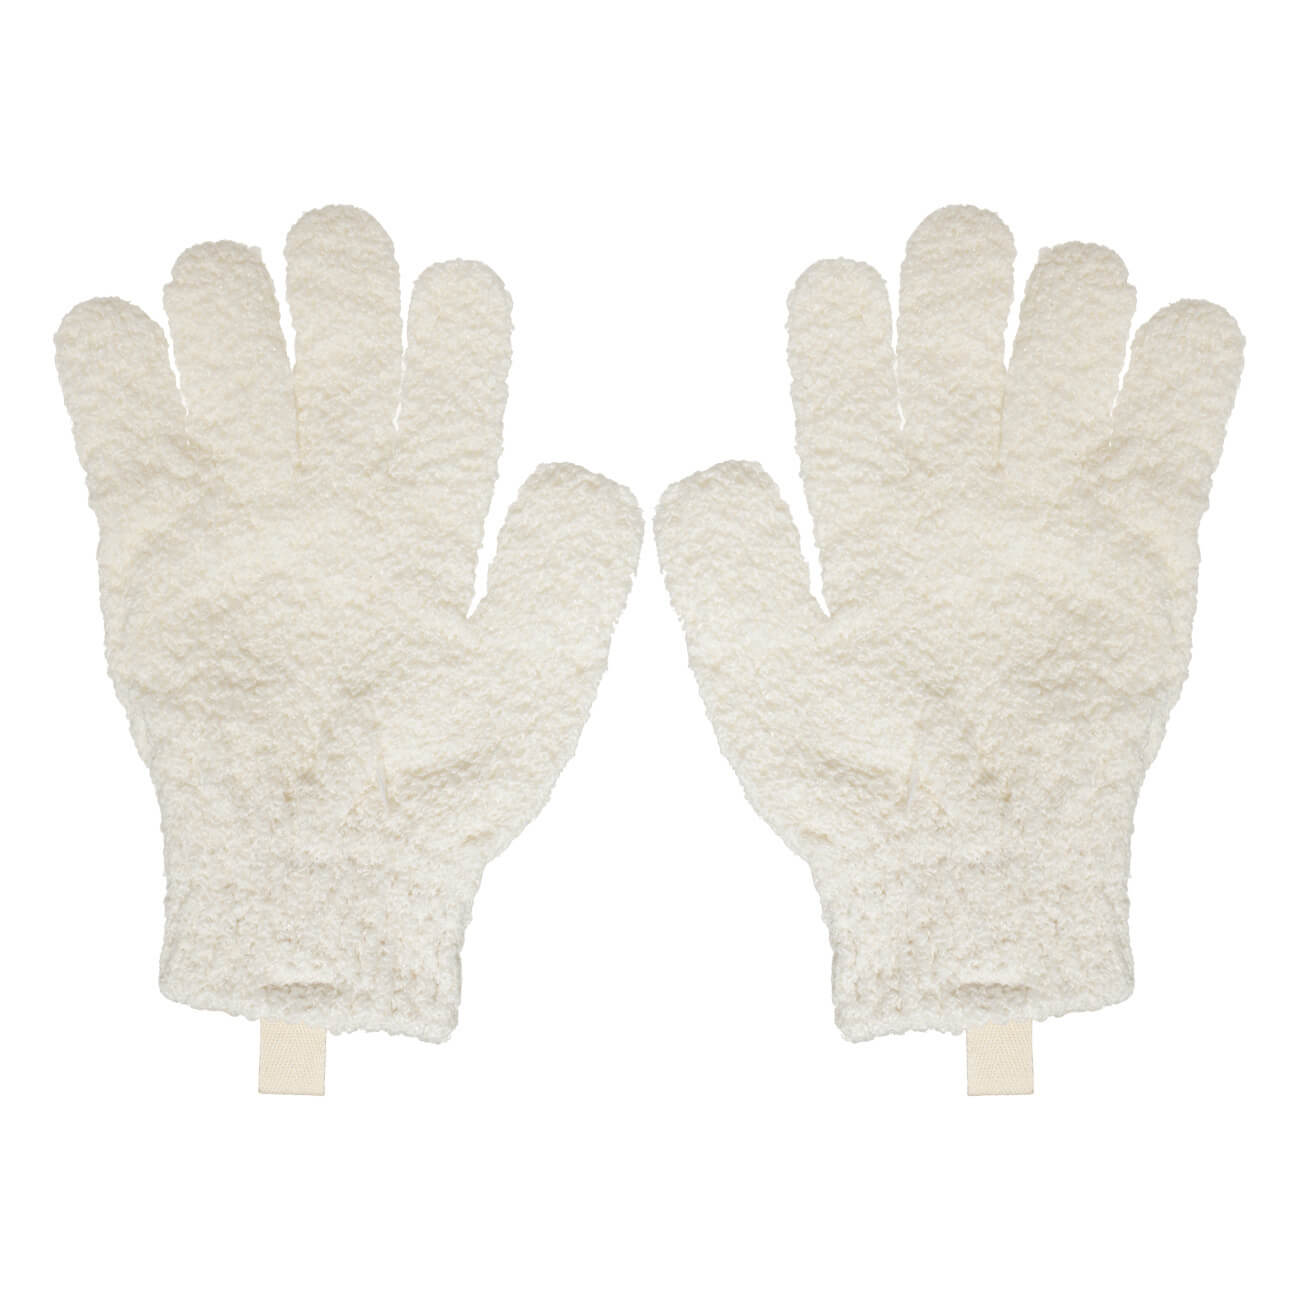 Перчатка для мытья тела, 21 см, 2 шт, отшелушивающая, полиэстер, молочная, Unique spa